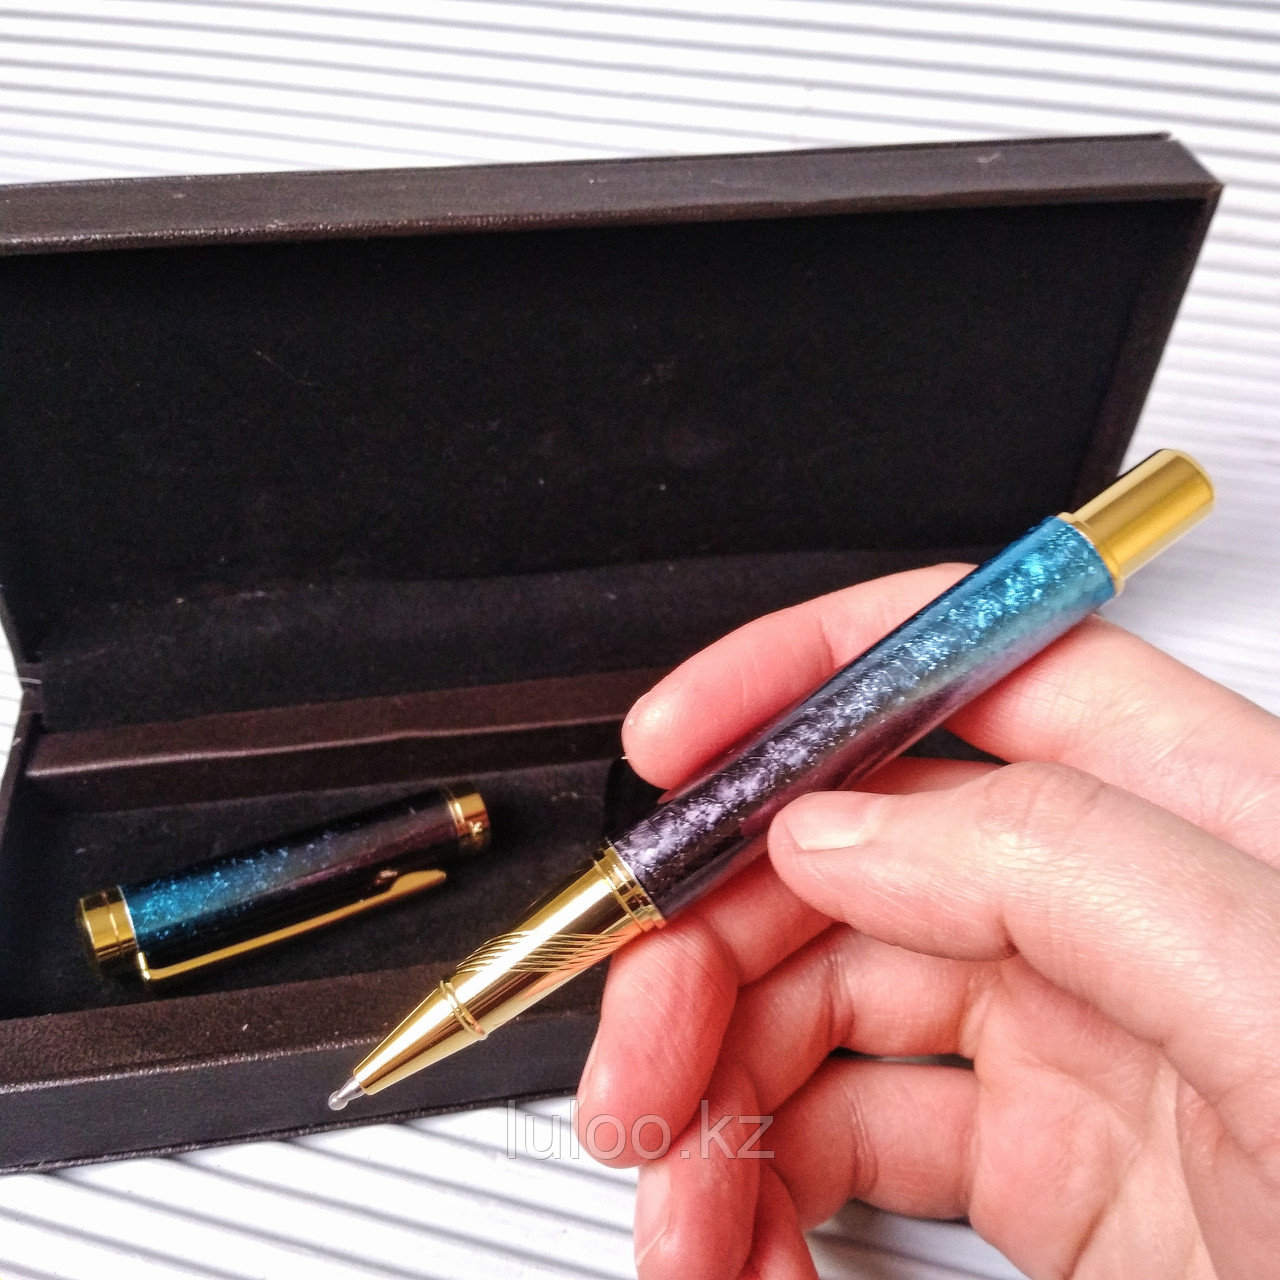 Подарочная ручка в коробке из эко кожи, "Блики".